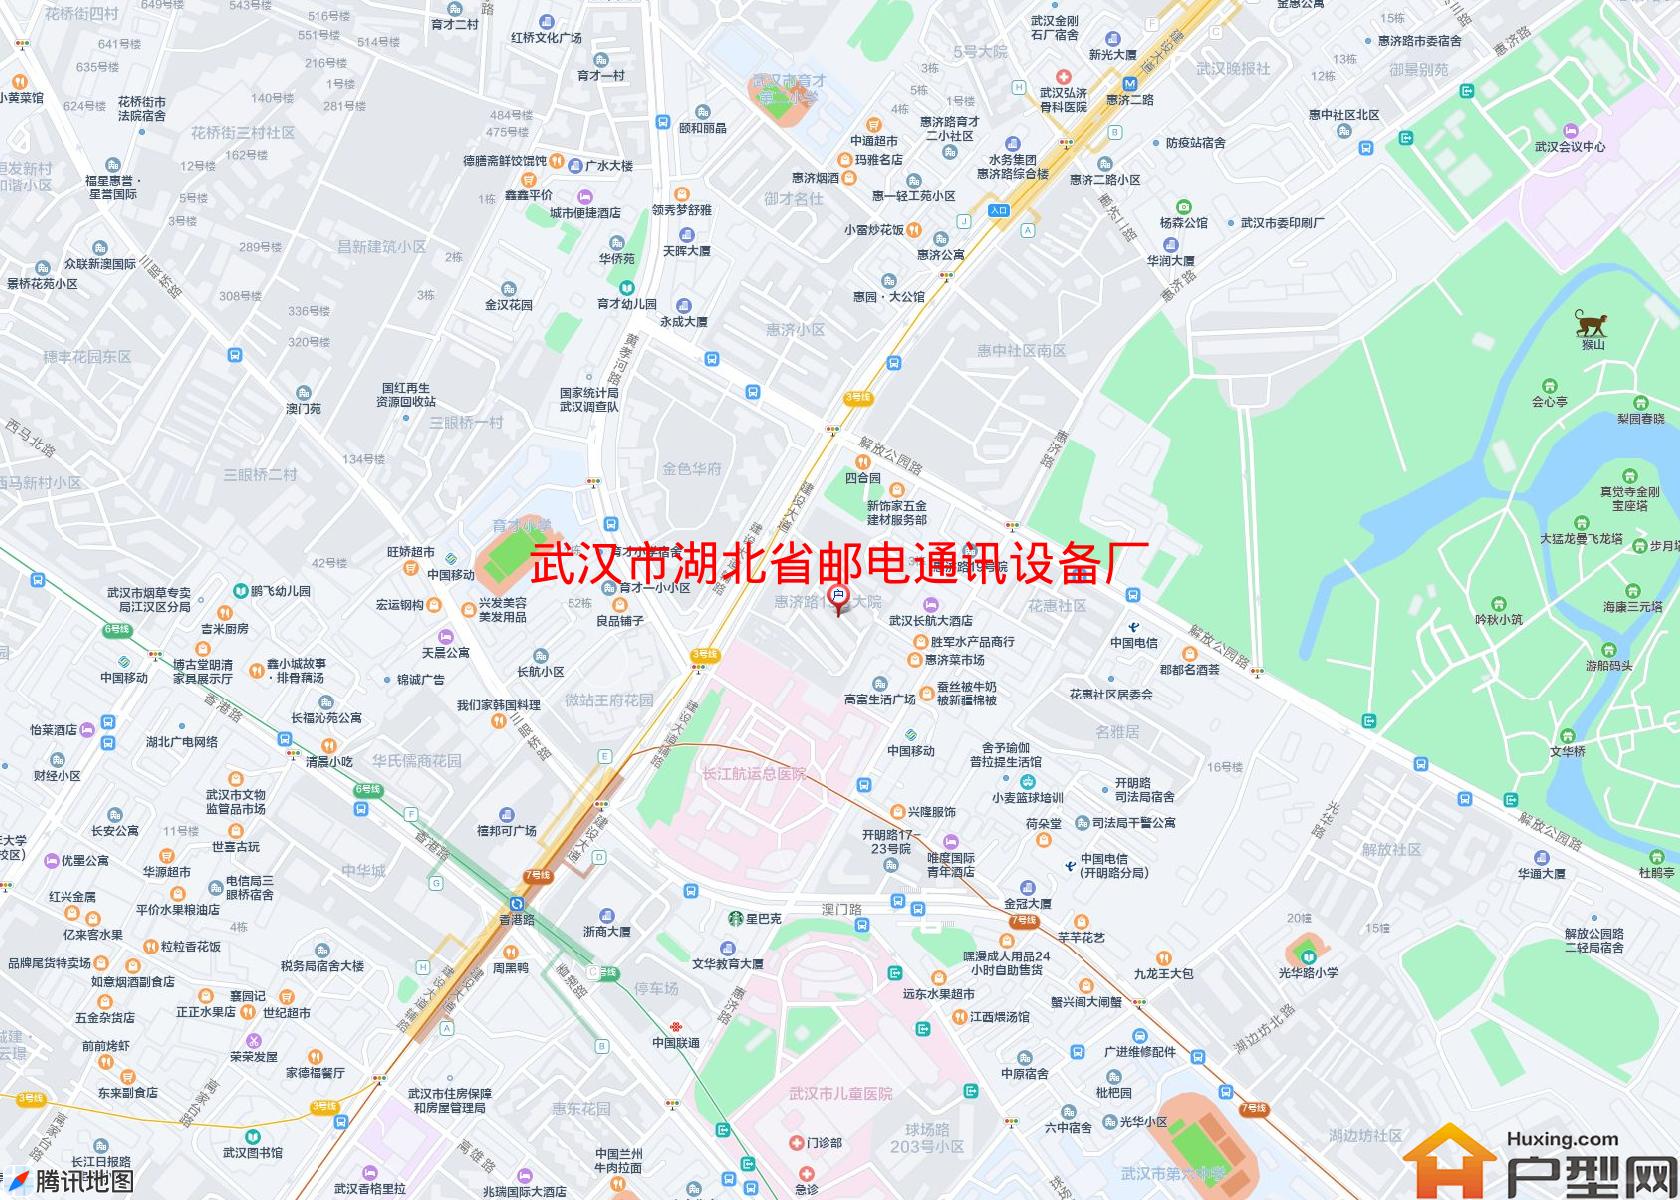 湖北省邮电通讯设备厂宿舍小区 - 户型网